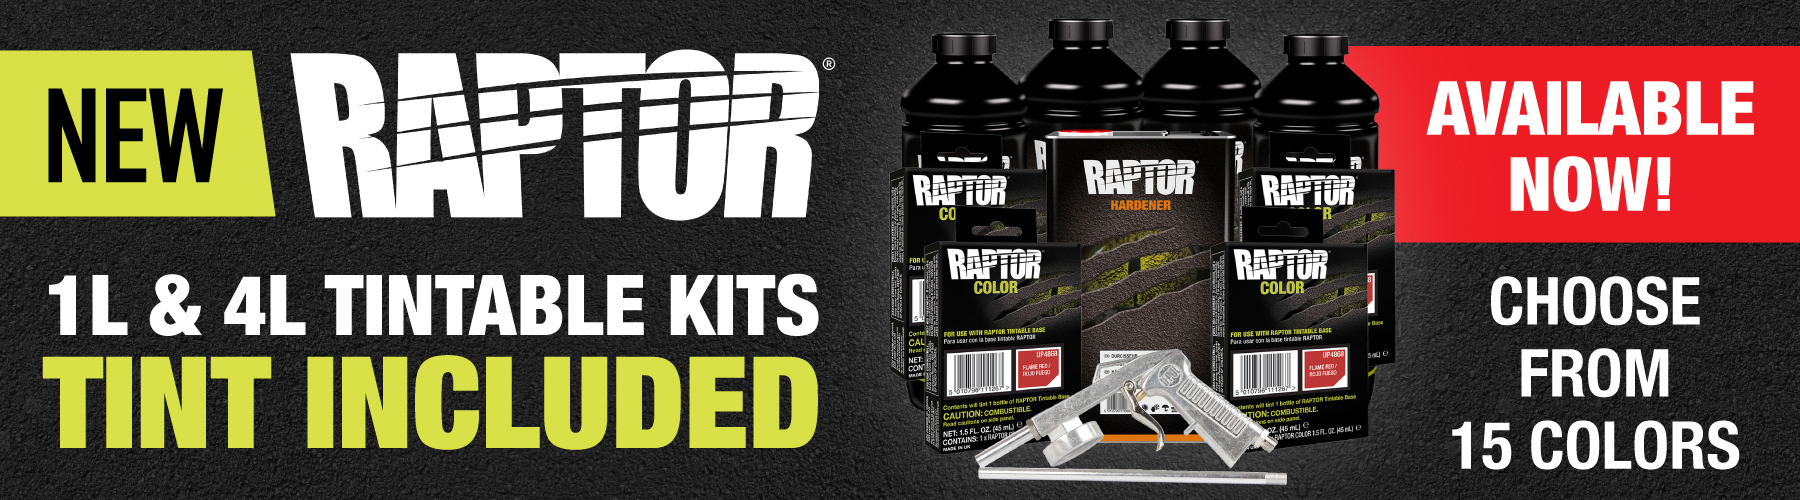 Raptor Tintable Kits with Tint